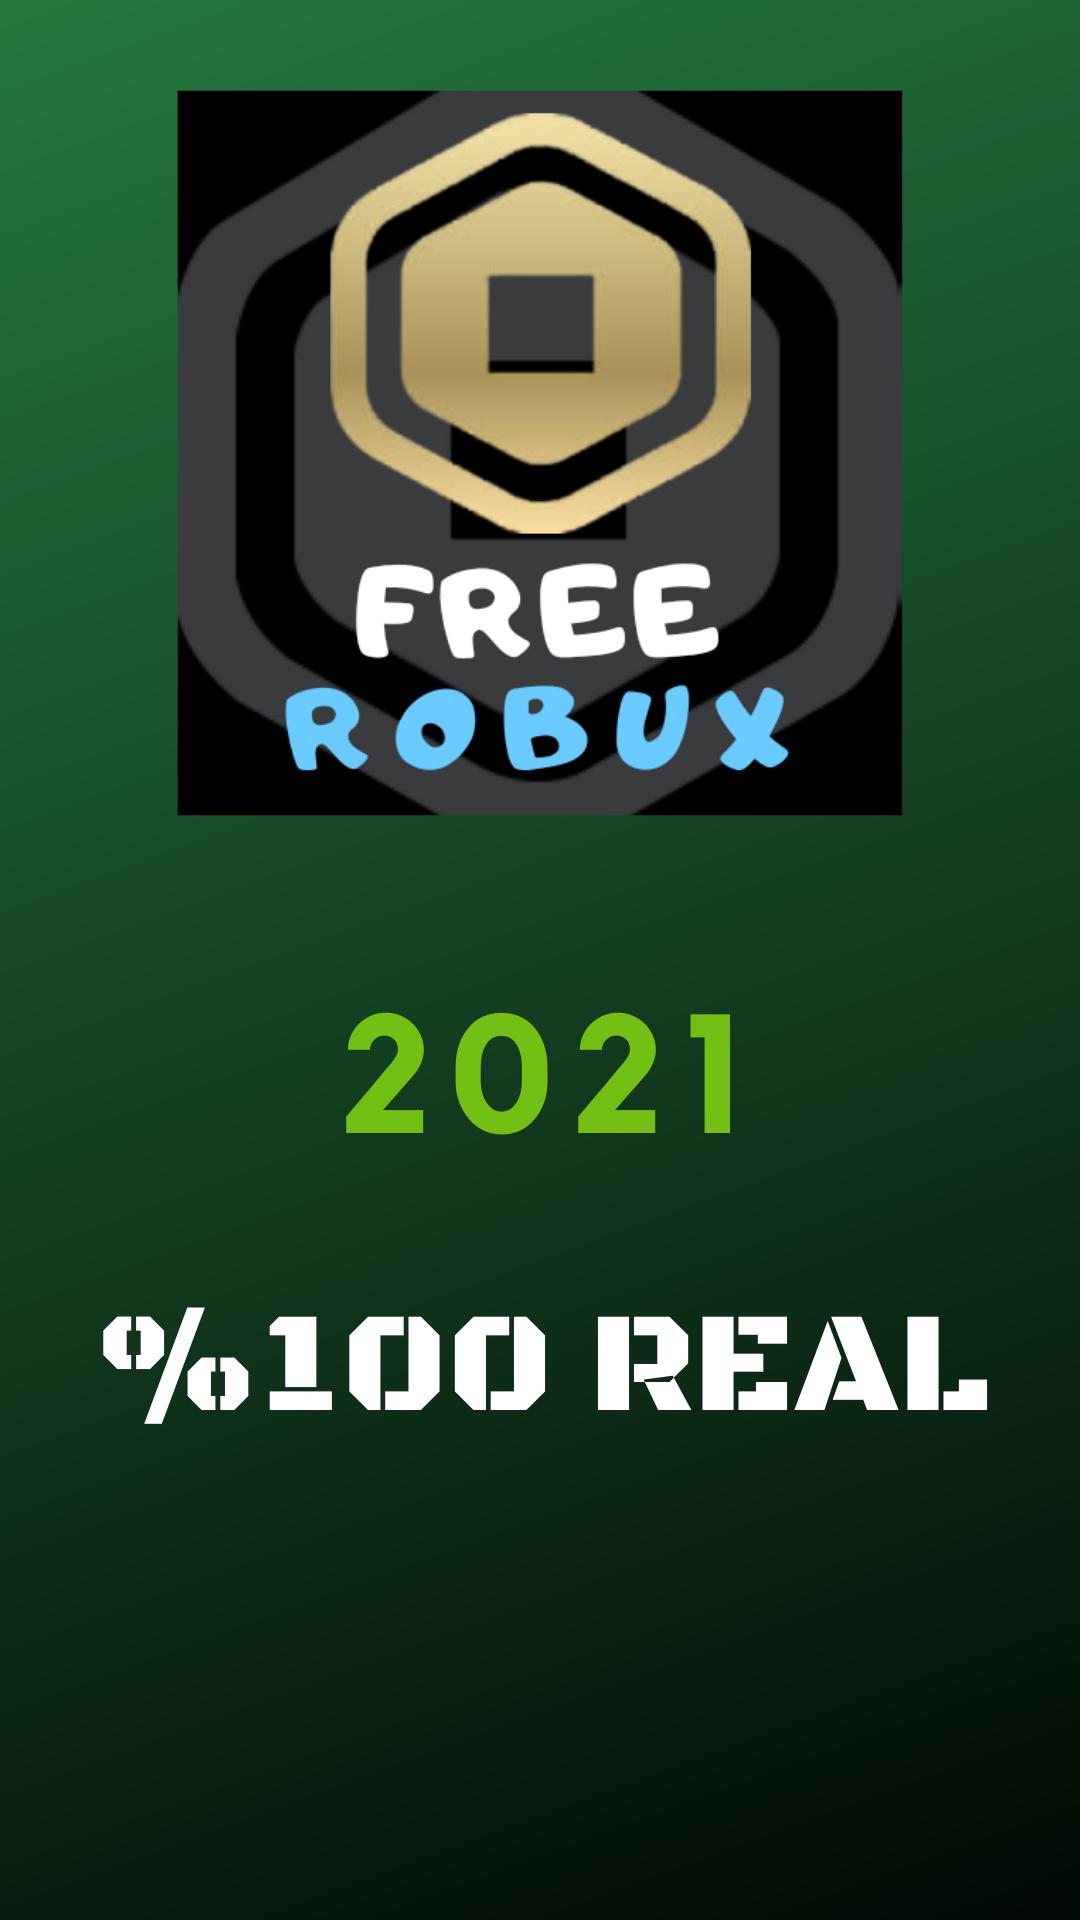 Free robux